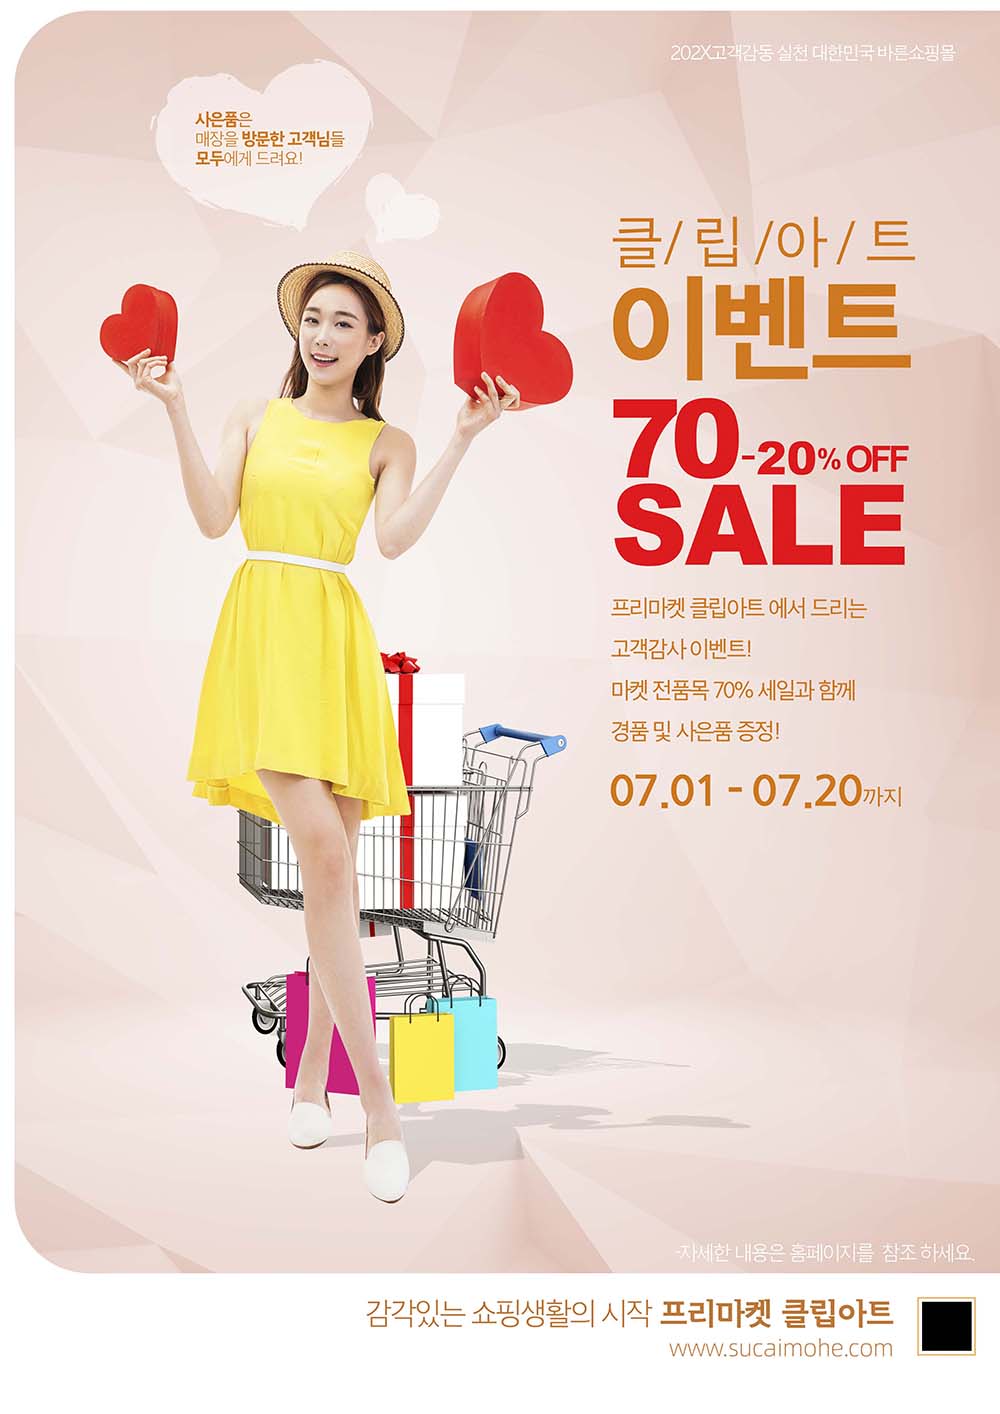 韩国黄裙子美女购物车促销海报